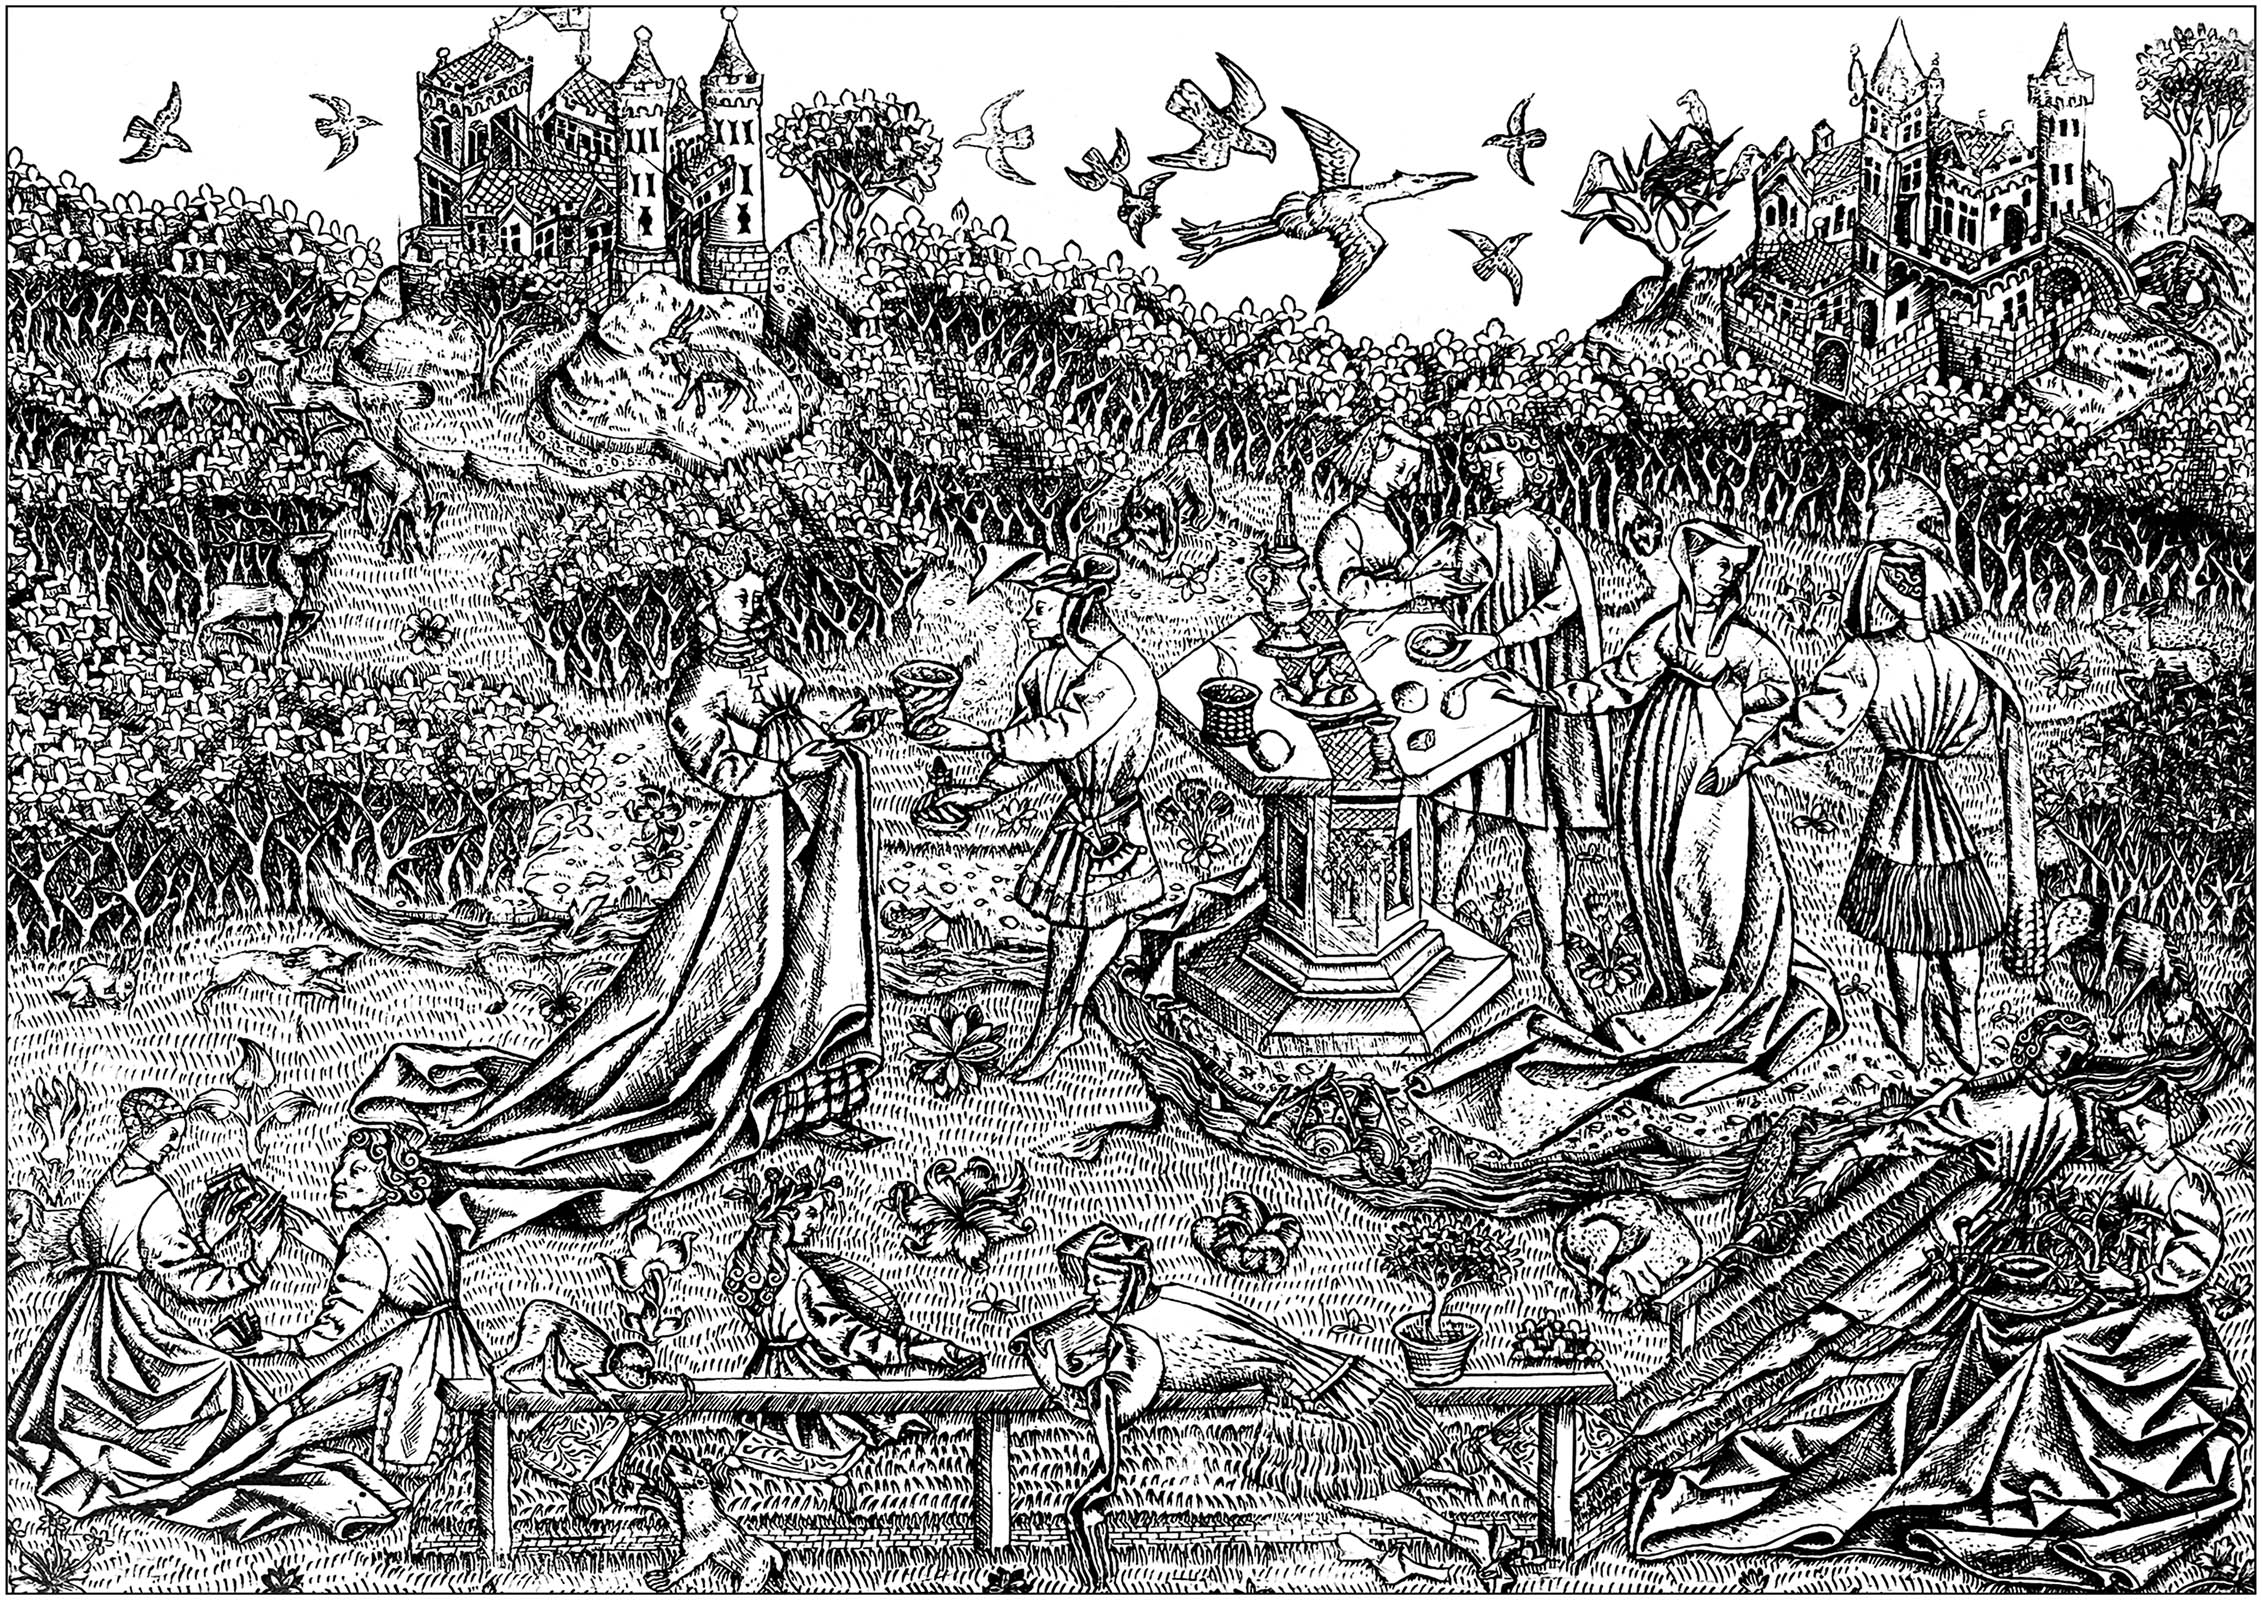 Kupferstich 'Meister der Liebesgärten (Der große Garten der Liebe)' von Jérôme (Hieronymus) Bosch (um 1450). Dieser Kupferstich ist in Berlin in den Staatlichen Museen zu sehen. Es ist fast die Originalzeichnung, die man ausmalen kann: nichts wurde verändert, außer den wenigen Spuren im Himmel!